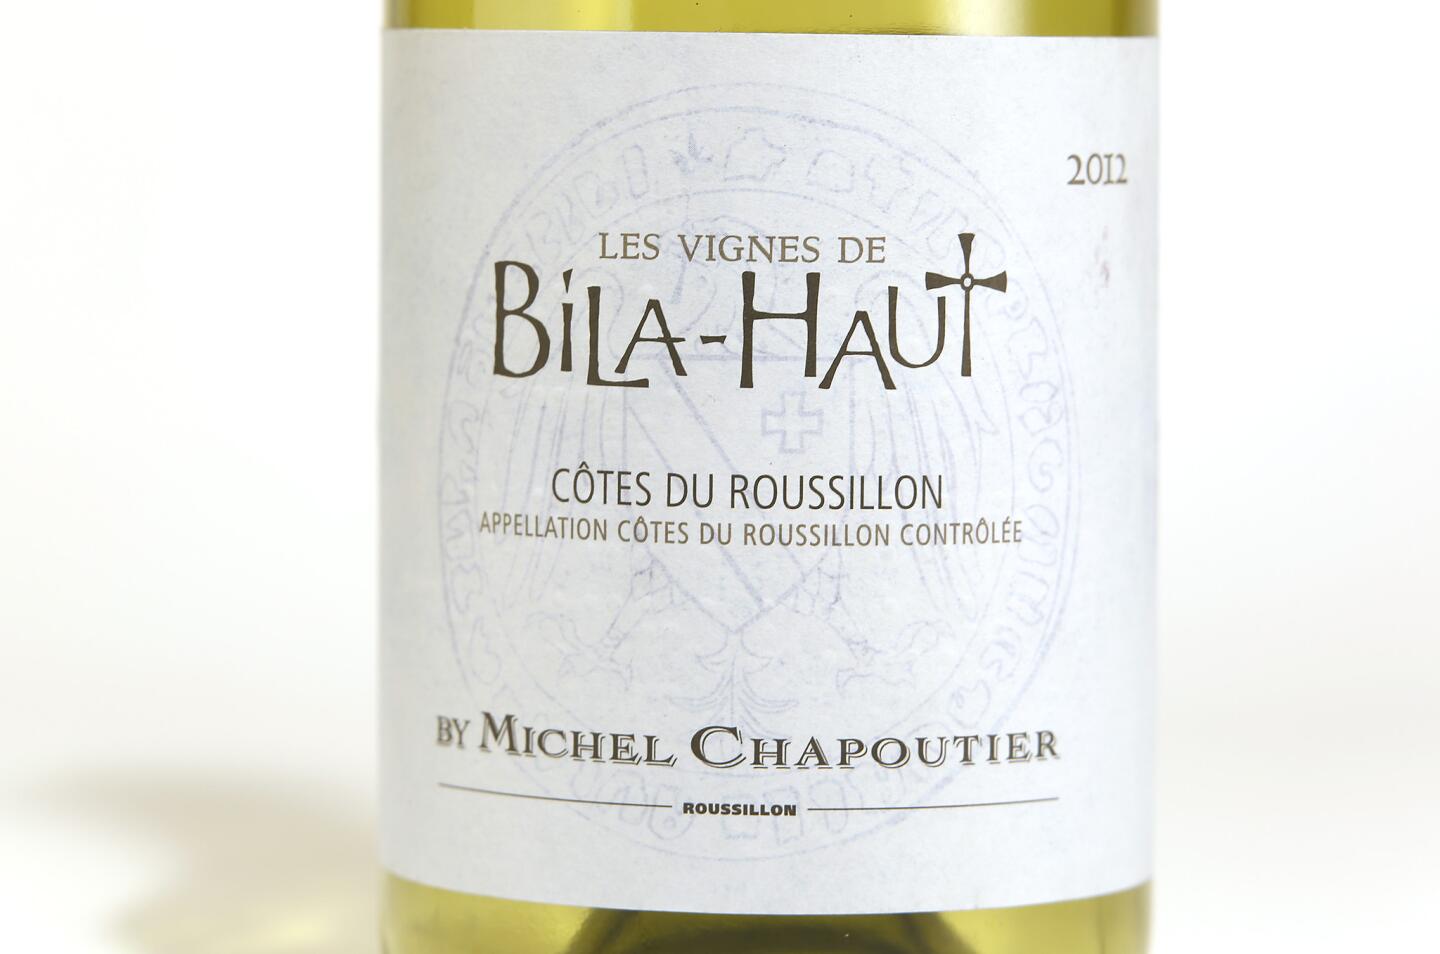 2012 Chapoutier Cotes du Roussillon Bila-Haut Blanc